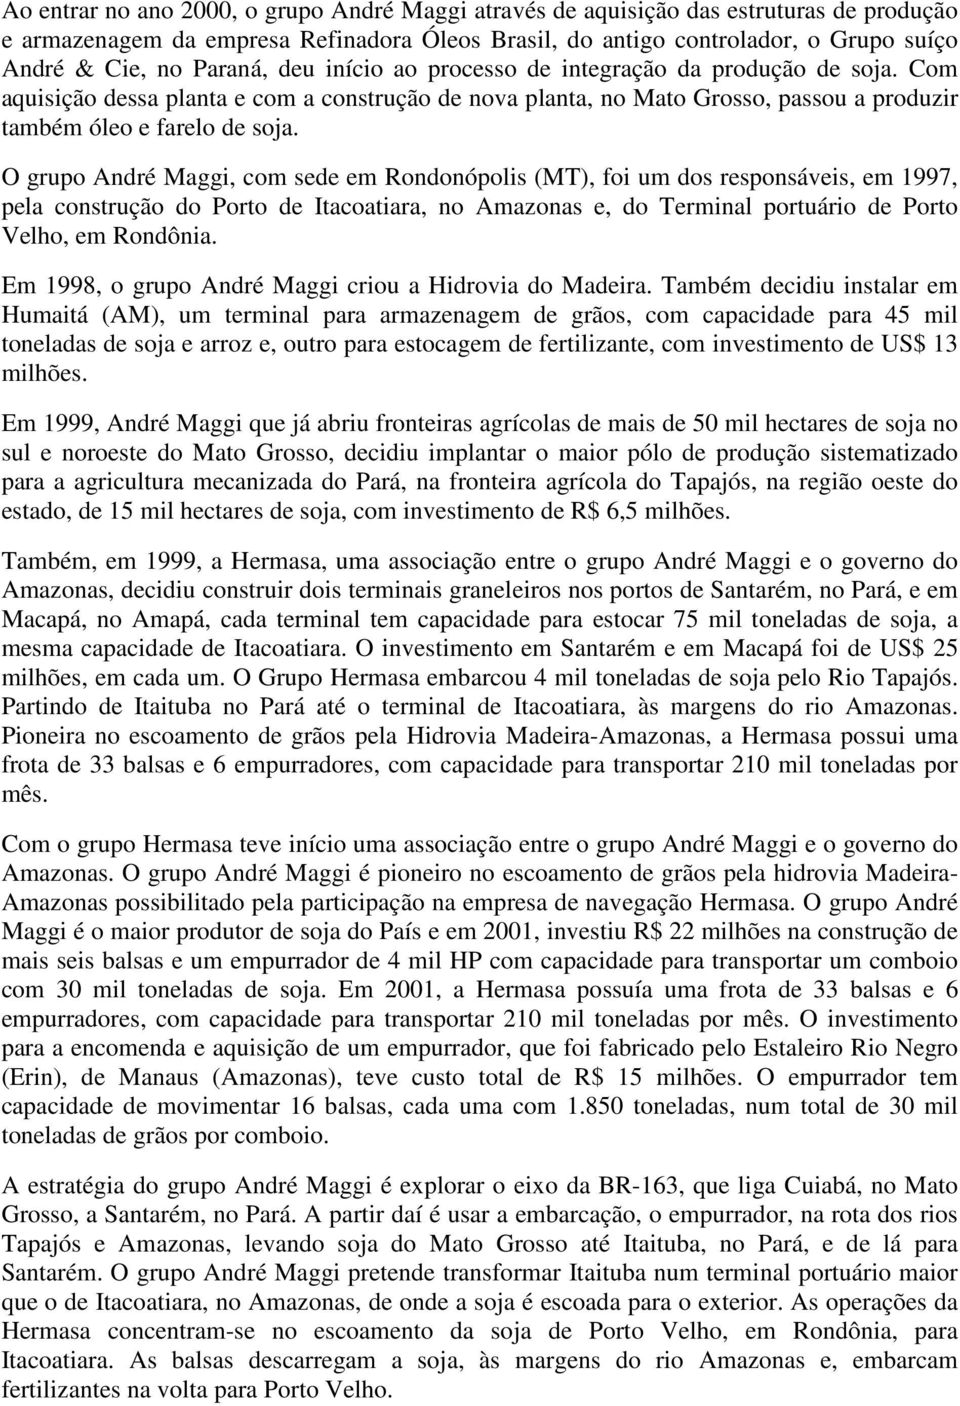 O grupo André Maggi, com sede em Rondonópolis (MT), foi um dos responsáveis, em 1997, pela construção do Porto de Itacoatiara, no Amazonas e, do Terminal portuário de Porto Velho, em Rondônia.